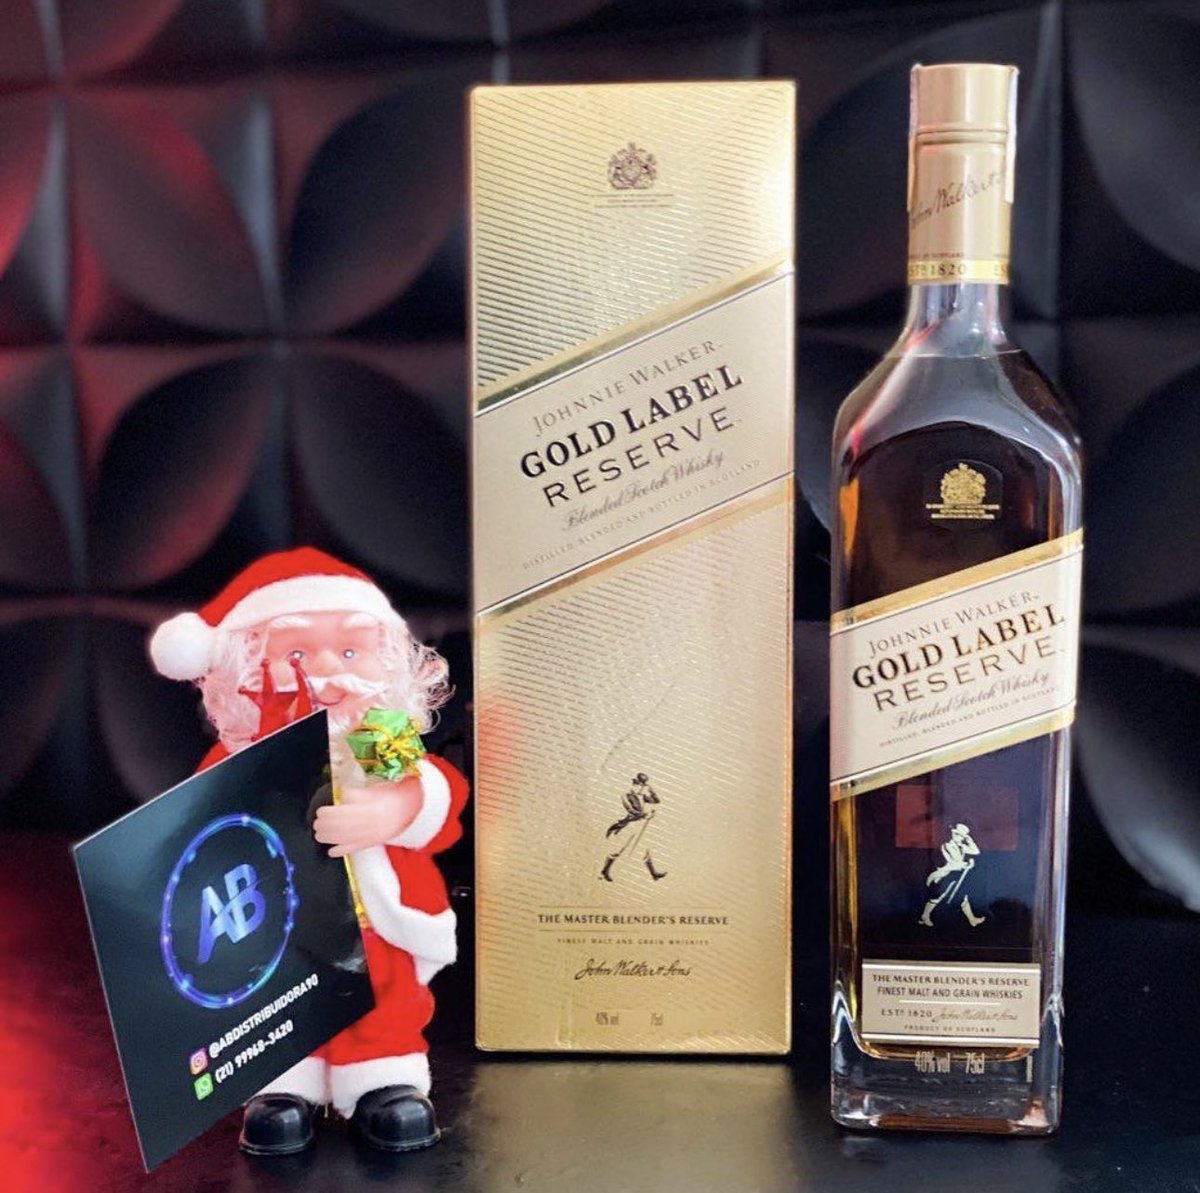 Natal cada vez mais próximo e a pergunta é: Já tá com estoque dos drinks ou presente pra quem você ama? 🎁 🎅🏼 🎄 🥂 🥃 🆎
.
.
.
#natal #festa #riodejaneiro #rj #penha #olaria #drinks #destilados #drink #bebidas #bebidasalcoolicas #whisky #gin #vodka #energetico